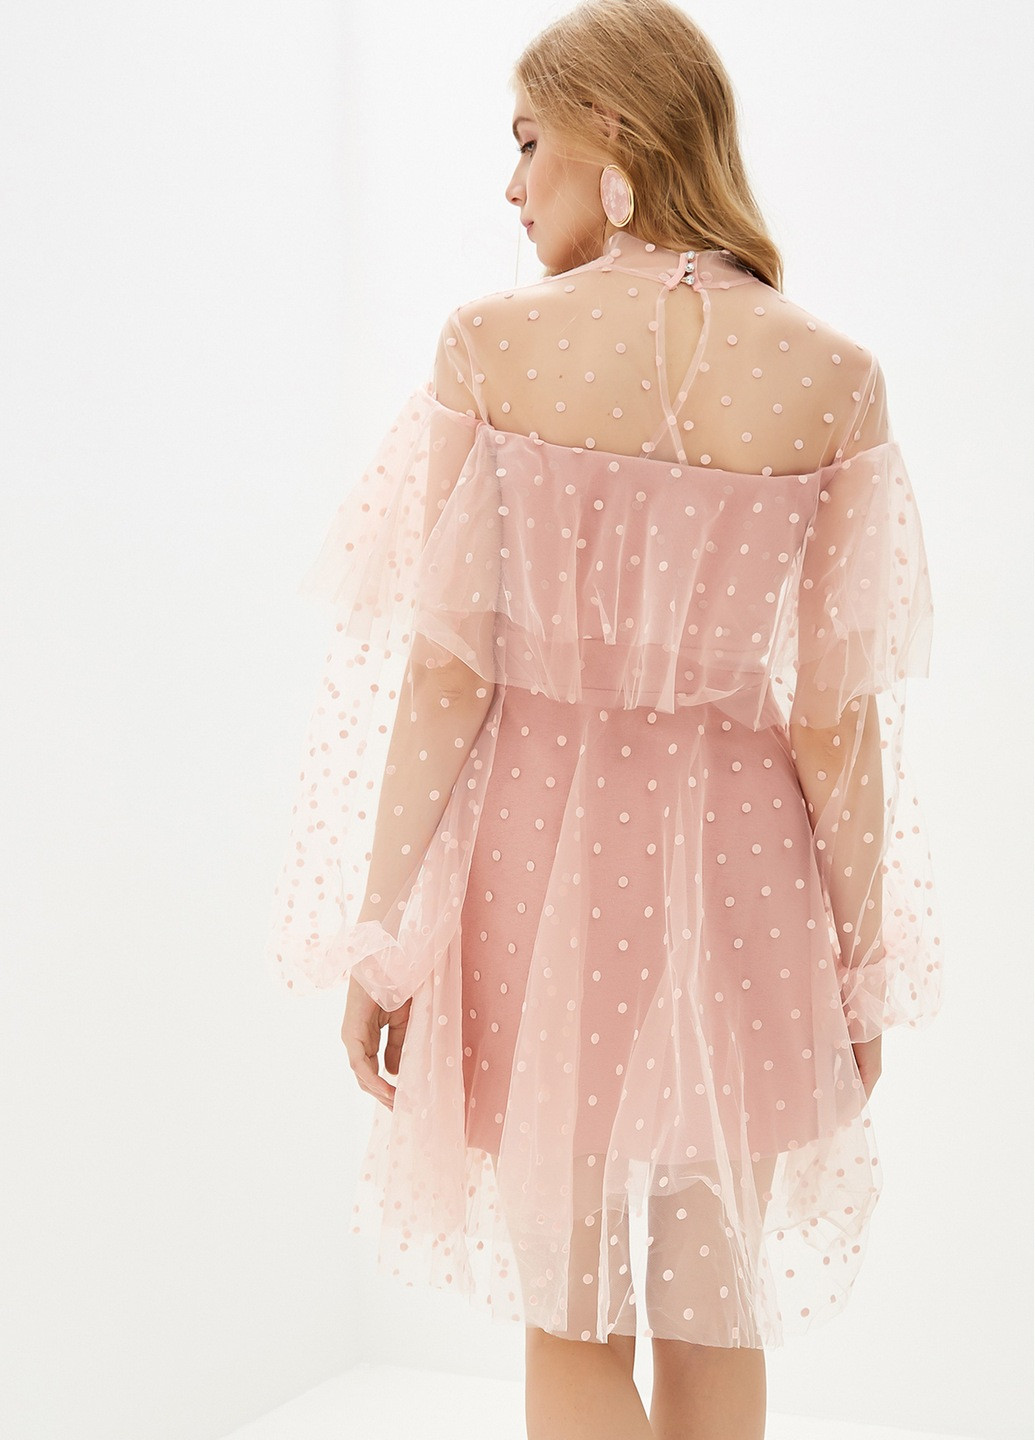 Светло-розовое коктейльное платье клеш Gepur в горошек